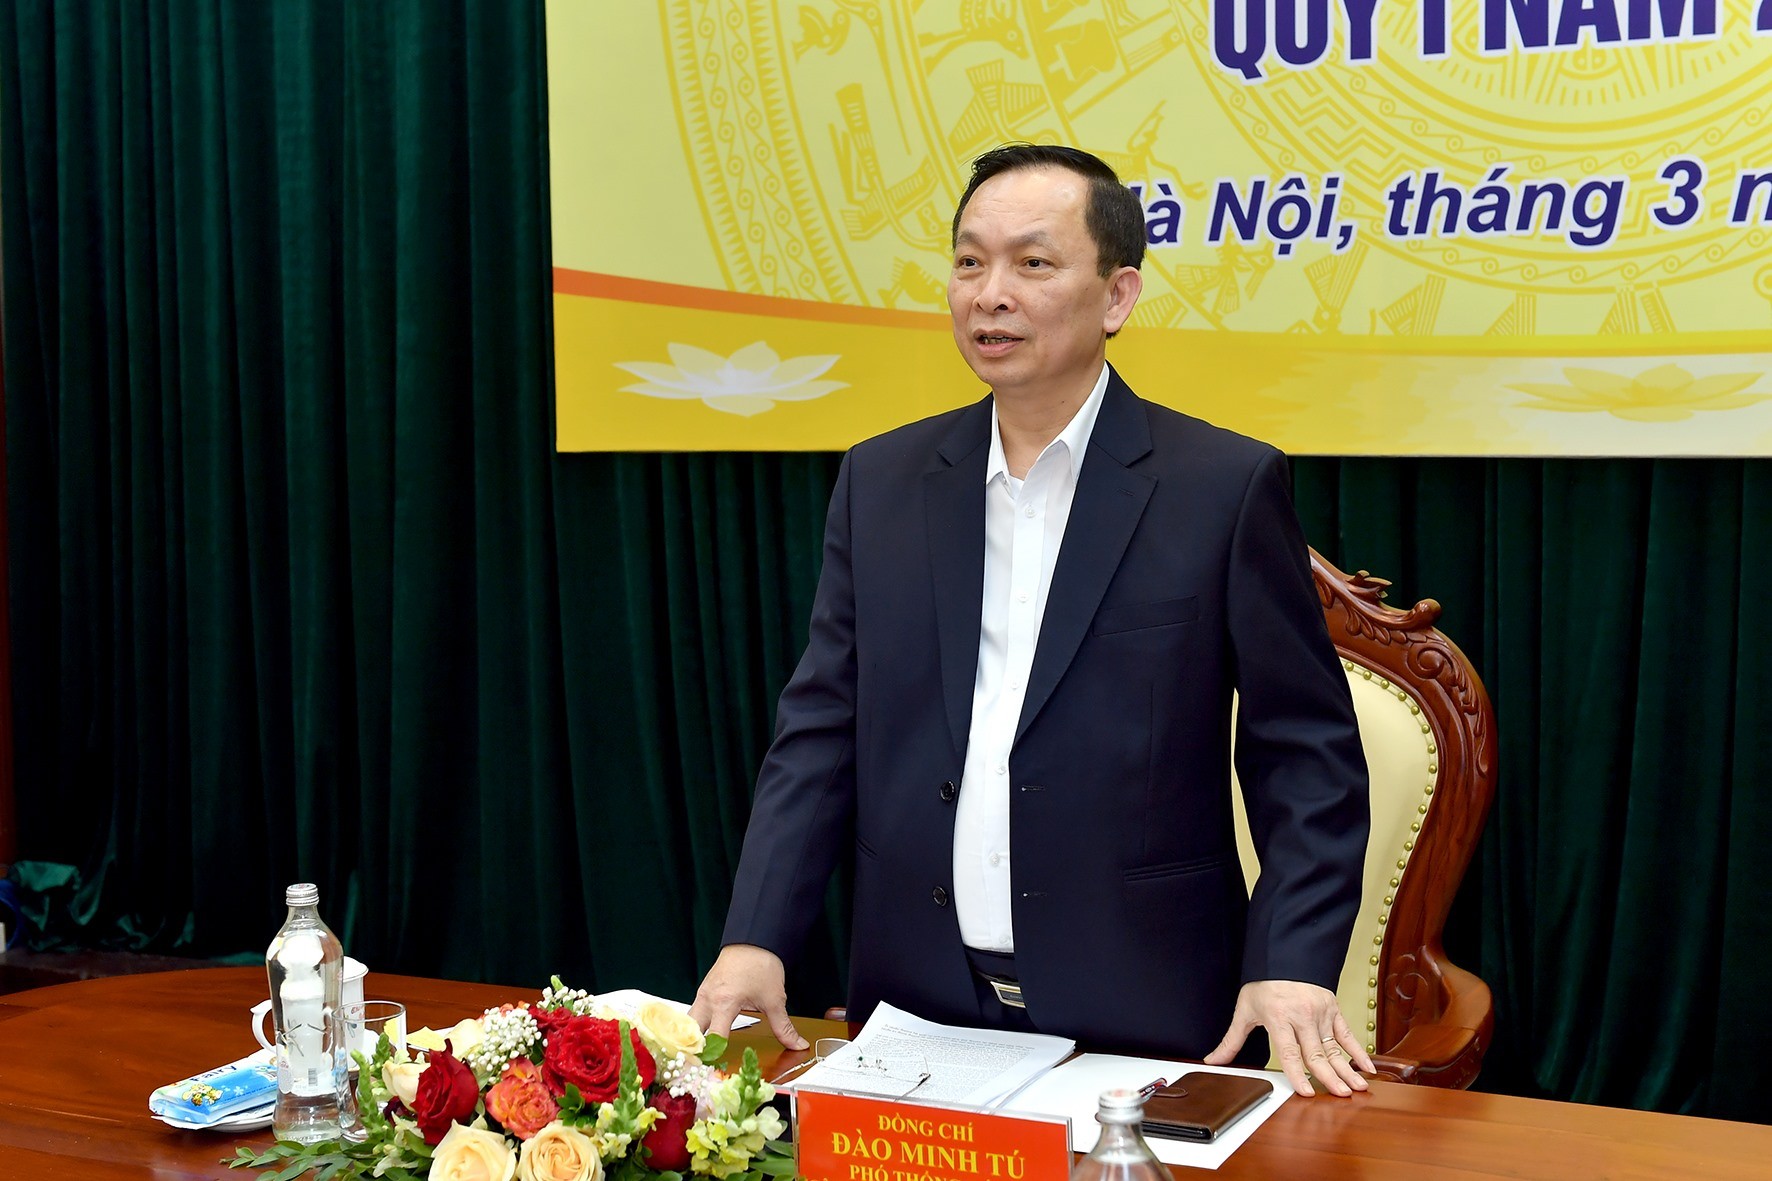 
Ông Đào Minh Tú, Phó Thống đốc Ngân hàng Nhà nước phát biểu tại họp báo.
